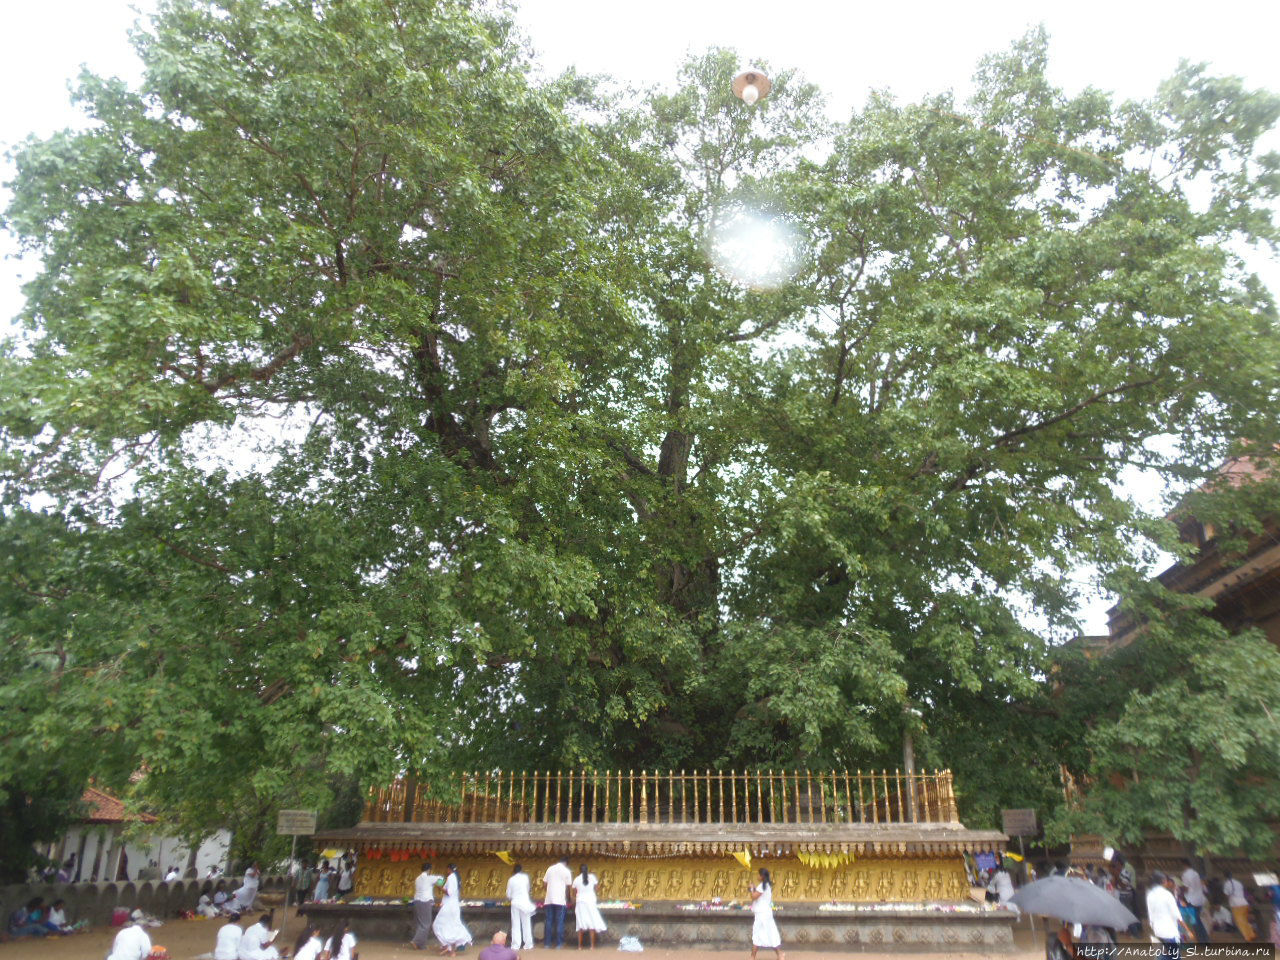 Слева от Храма Келании растет священное дерево Бодхи. Его окружает каменный постамент и ограда для охраны от чересчур ретивых прихожан. Верующие искренне считают, что в его тени некогда отдыхал, медитировал и читал проповеди сам Будда. Келания, Шри-Ланка